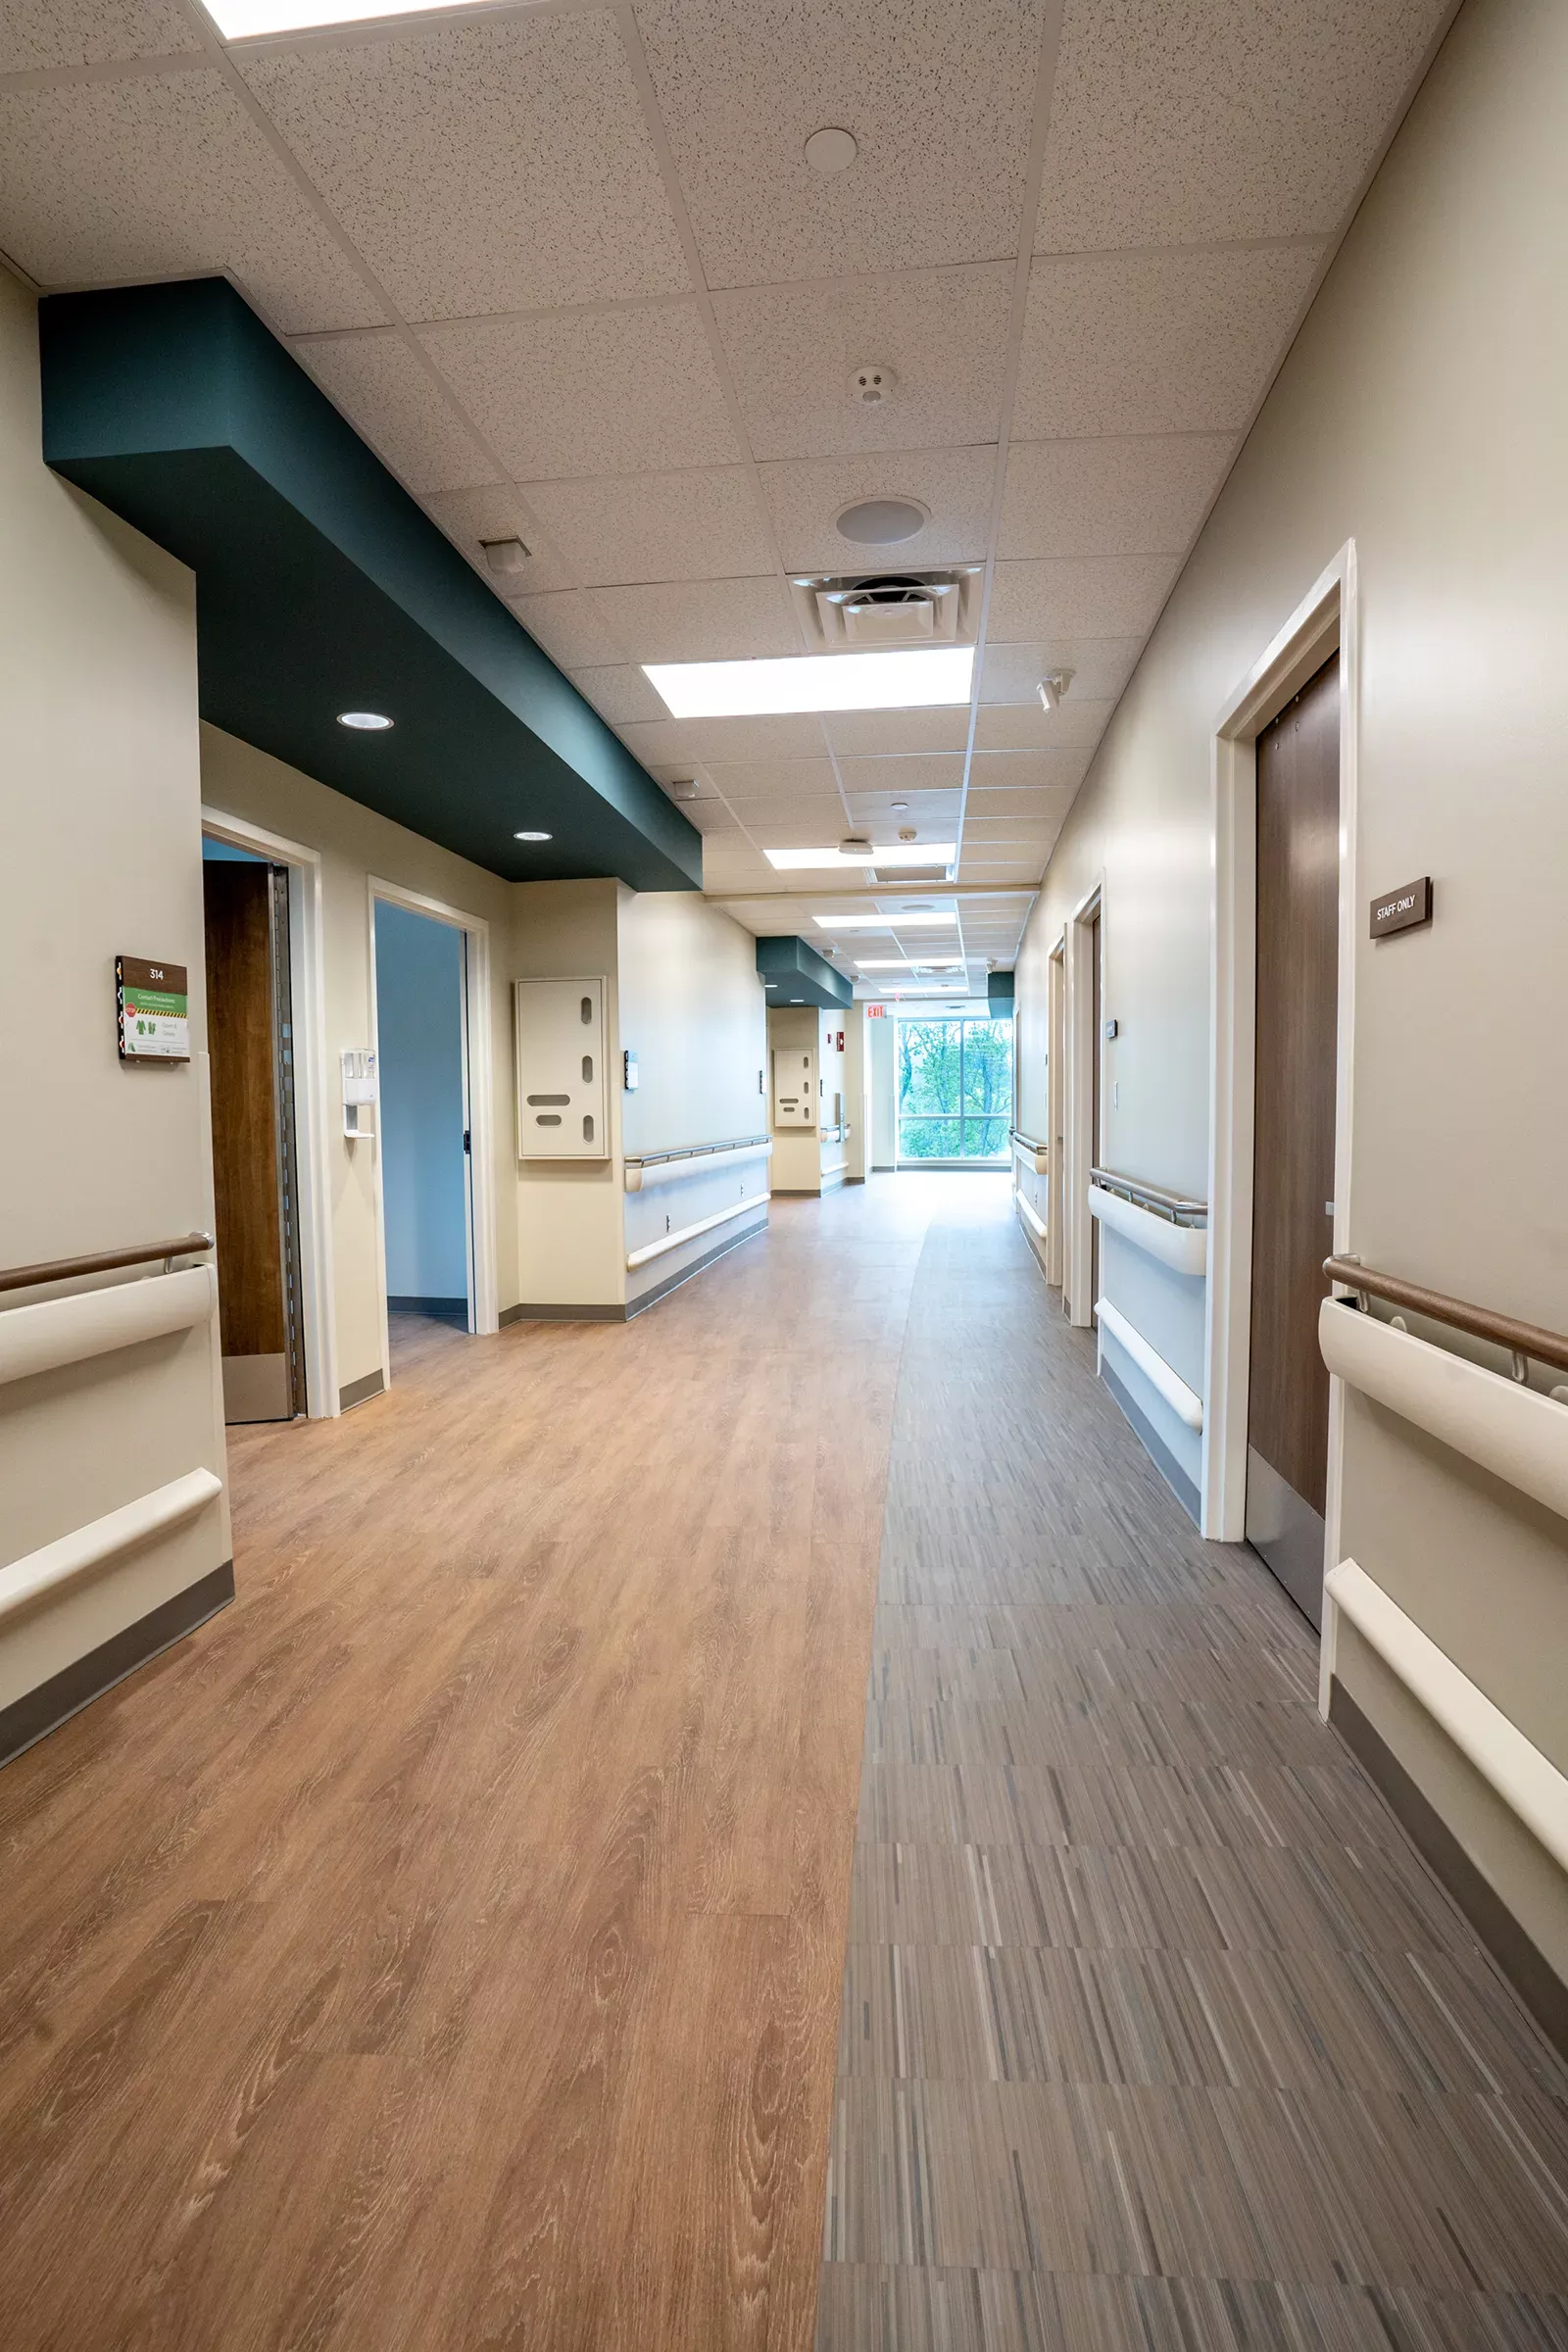 New patient tower hallway